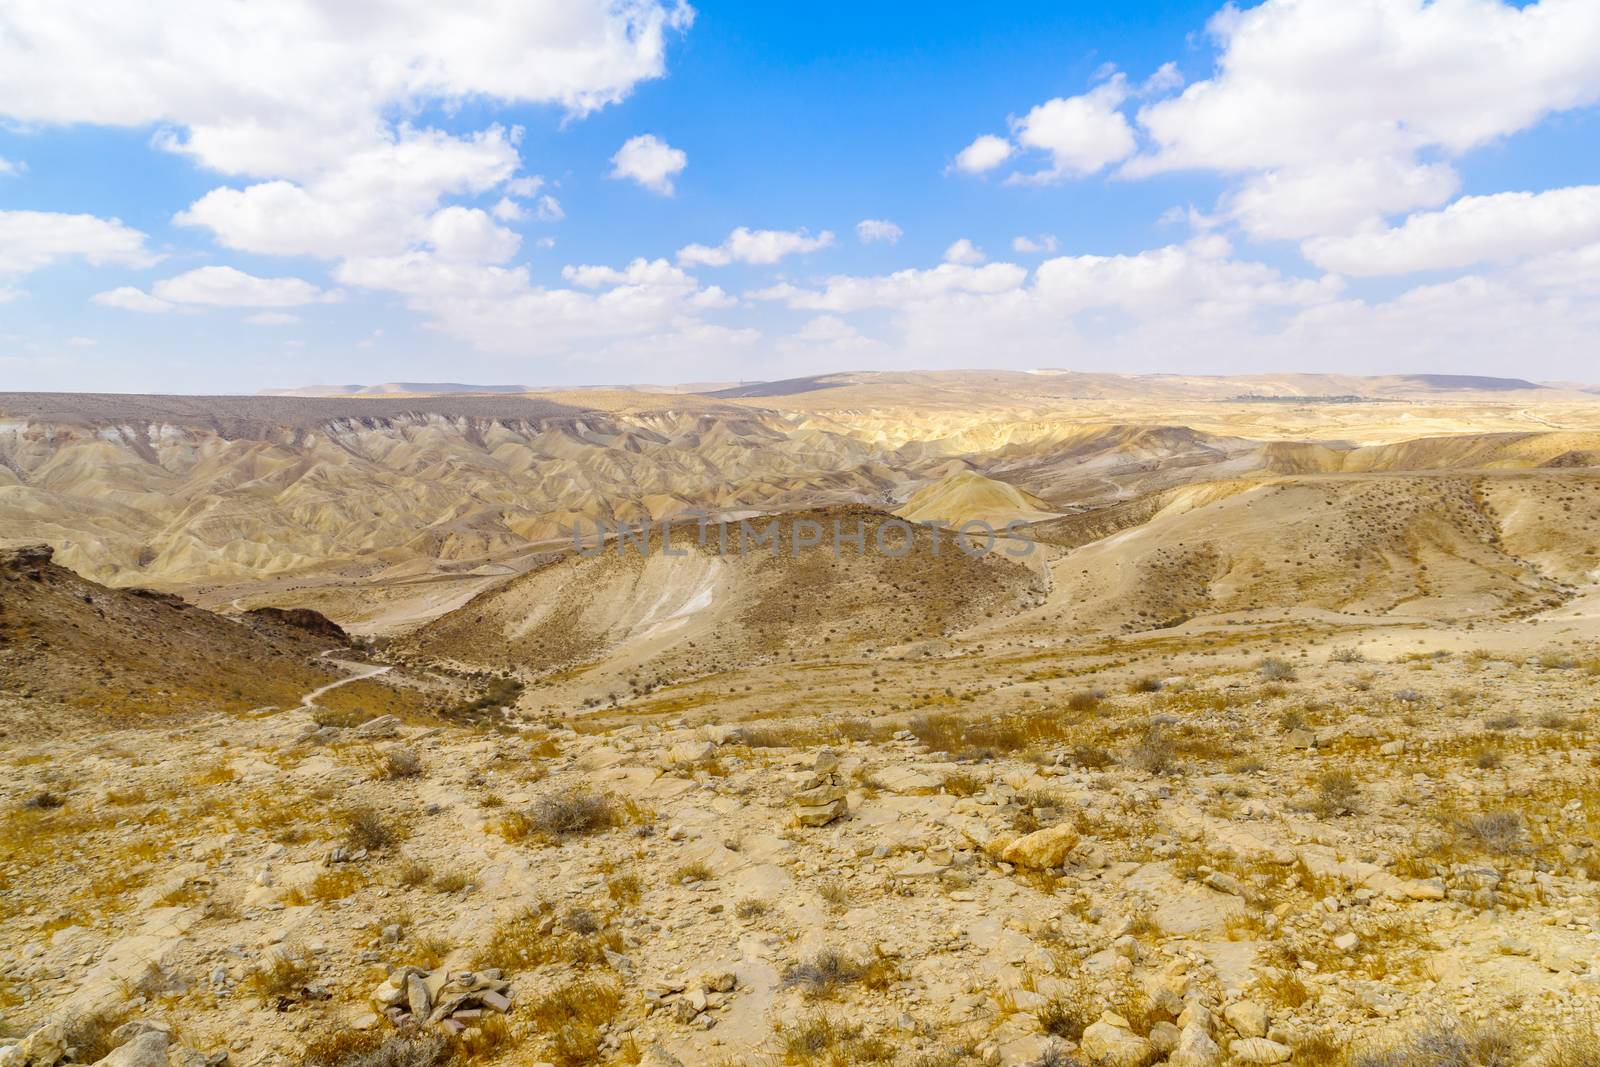 Zin Valley in the Negev Desert by RnDmS